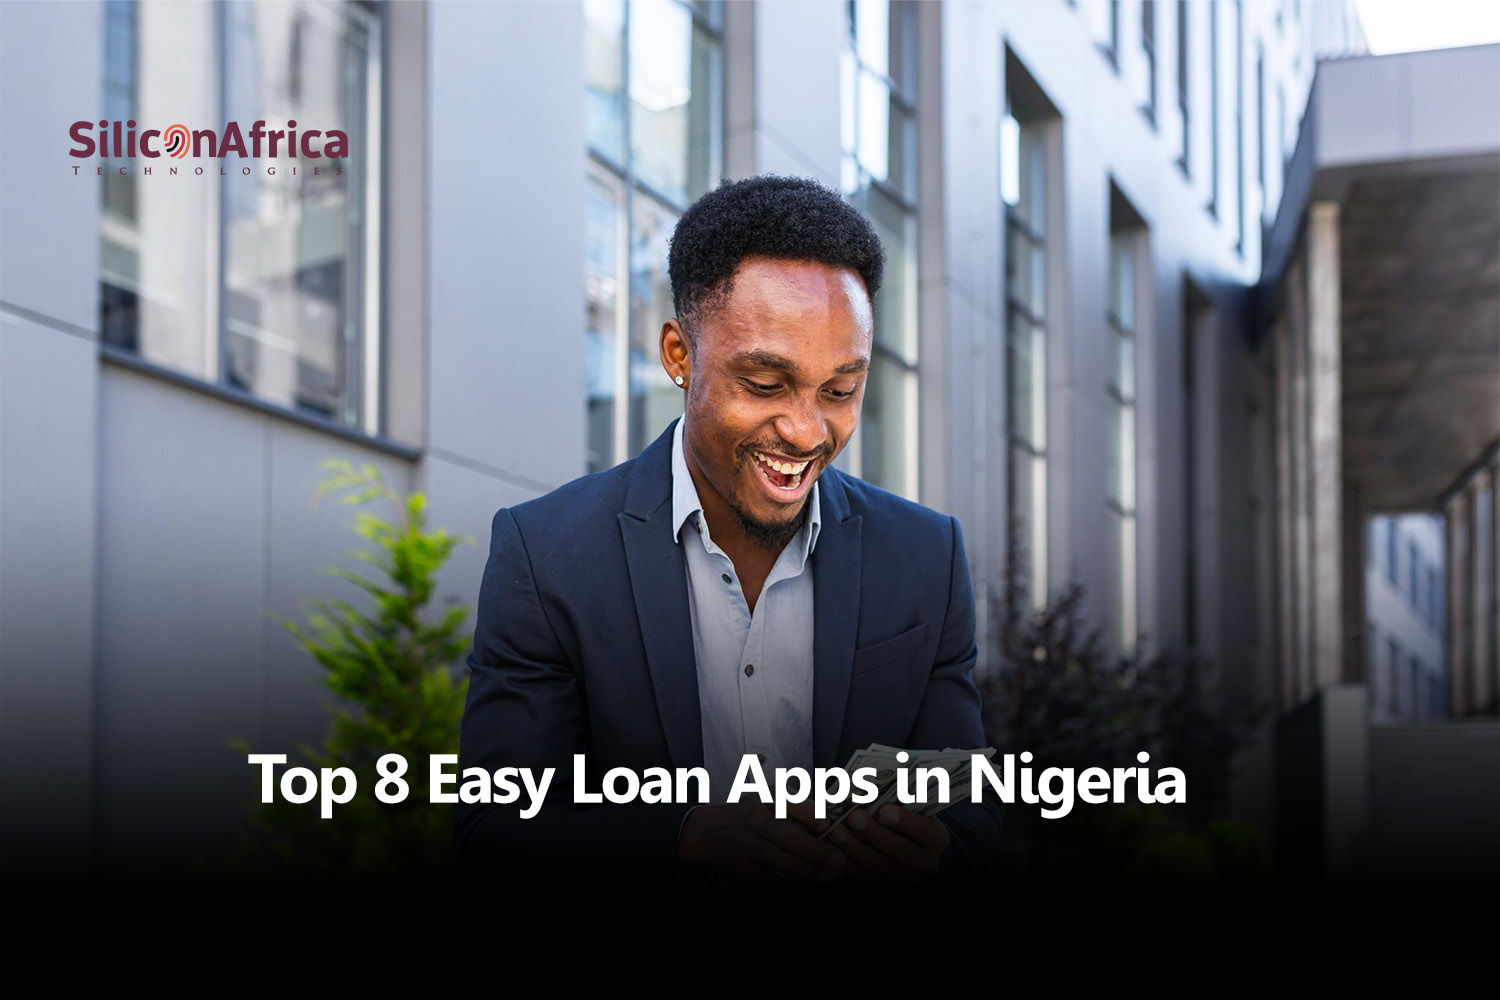 Top 8 Easy Loan Apps in Nigeria